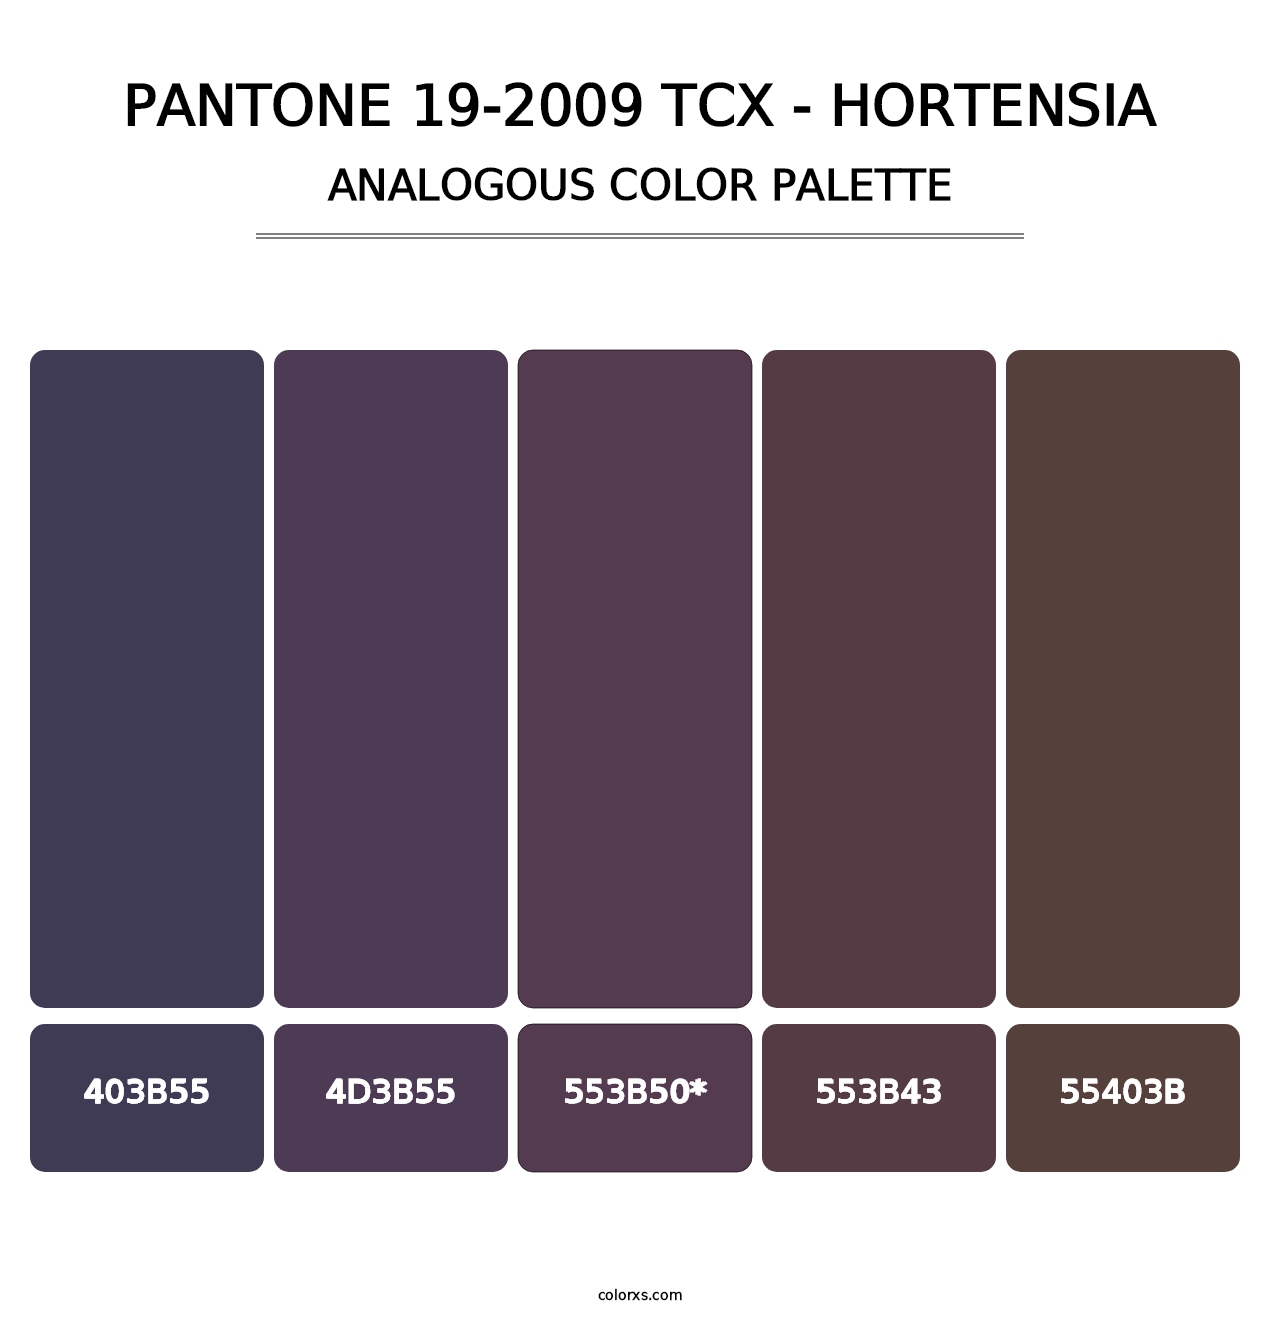 PANTONE 19-2009 TCX - Hortensia - Analogous Color Palette